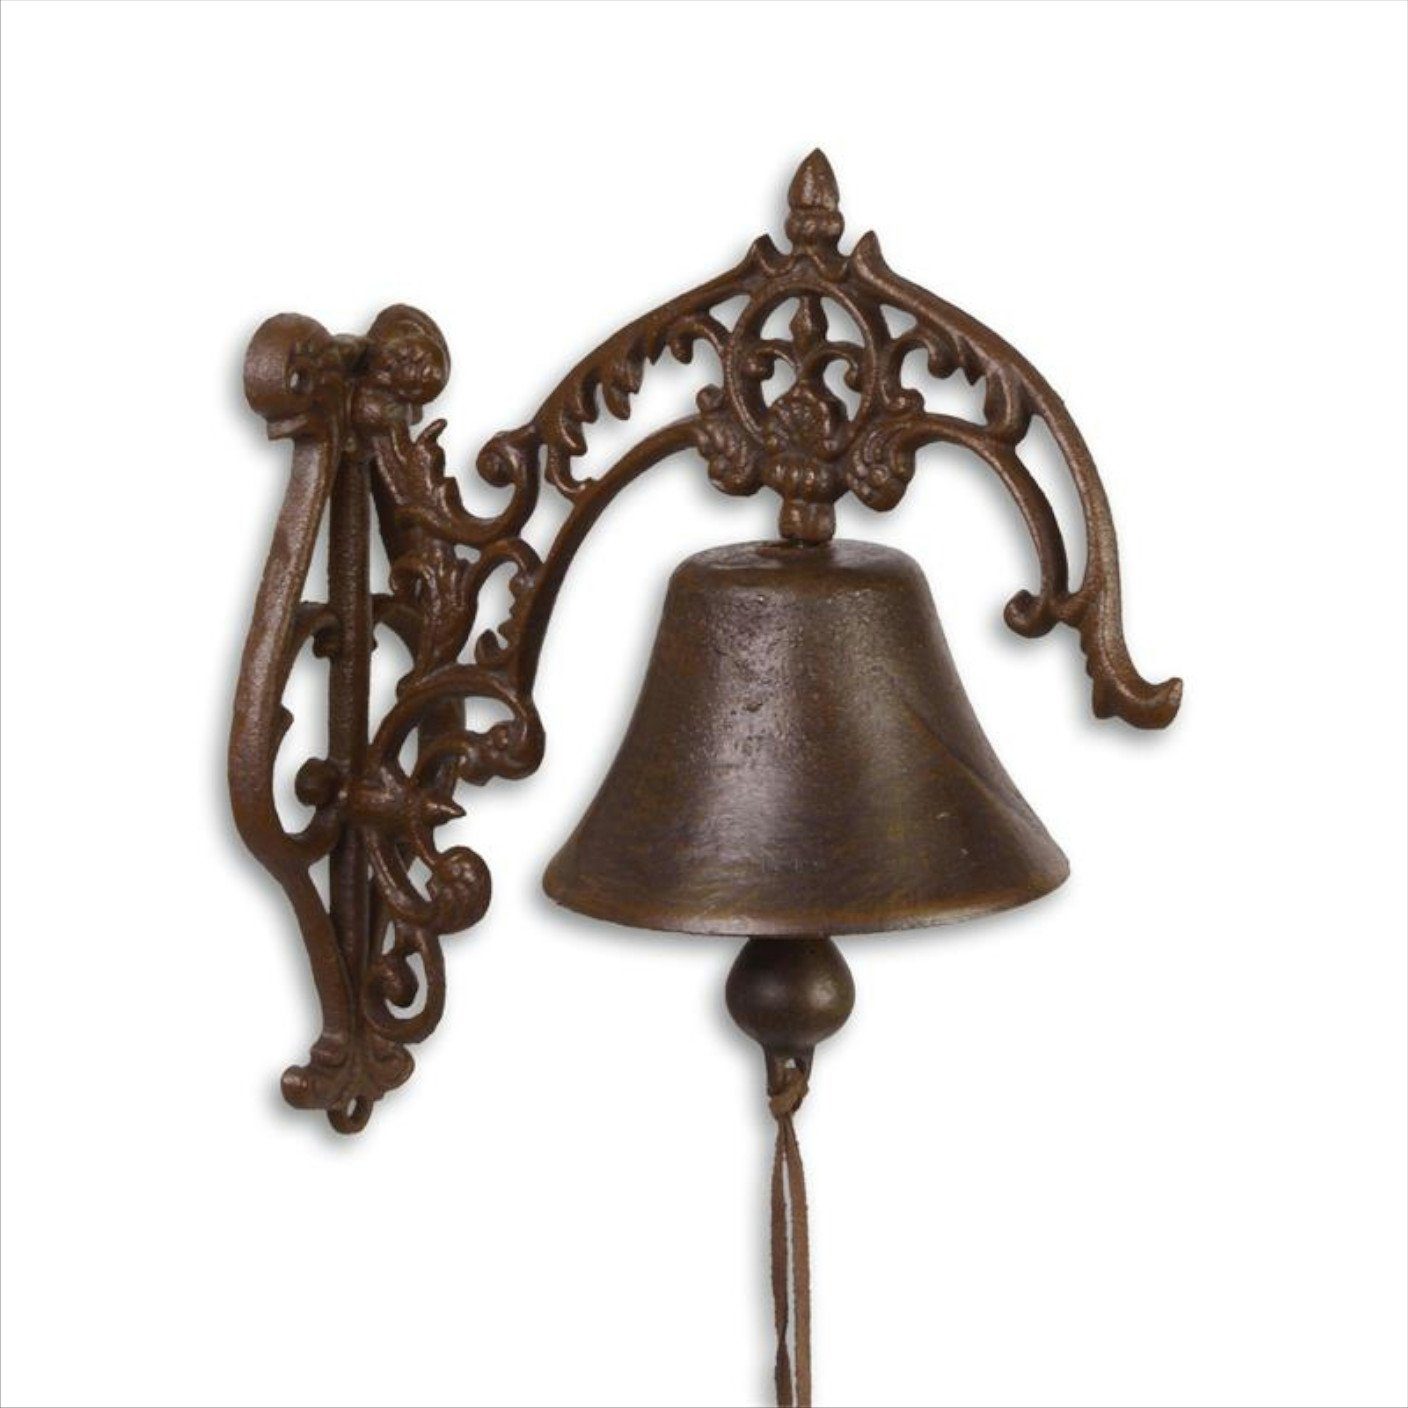 Moritz Gartenfigur Glocke mit Ornamenten Türglocke Gong Gusseisen Klingel Antik Landhaus groß, Glocke Wandglocke